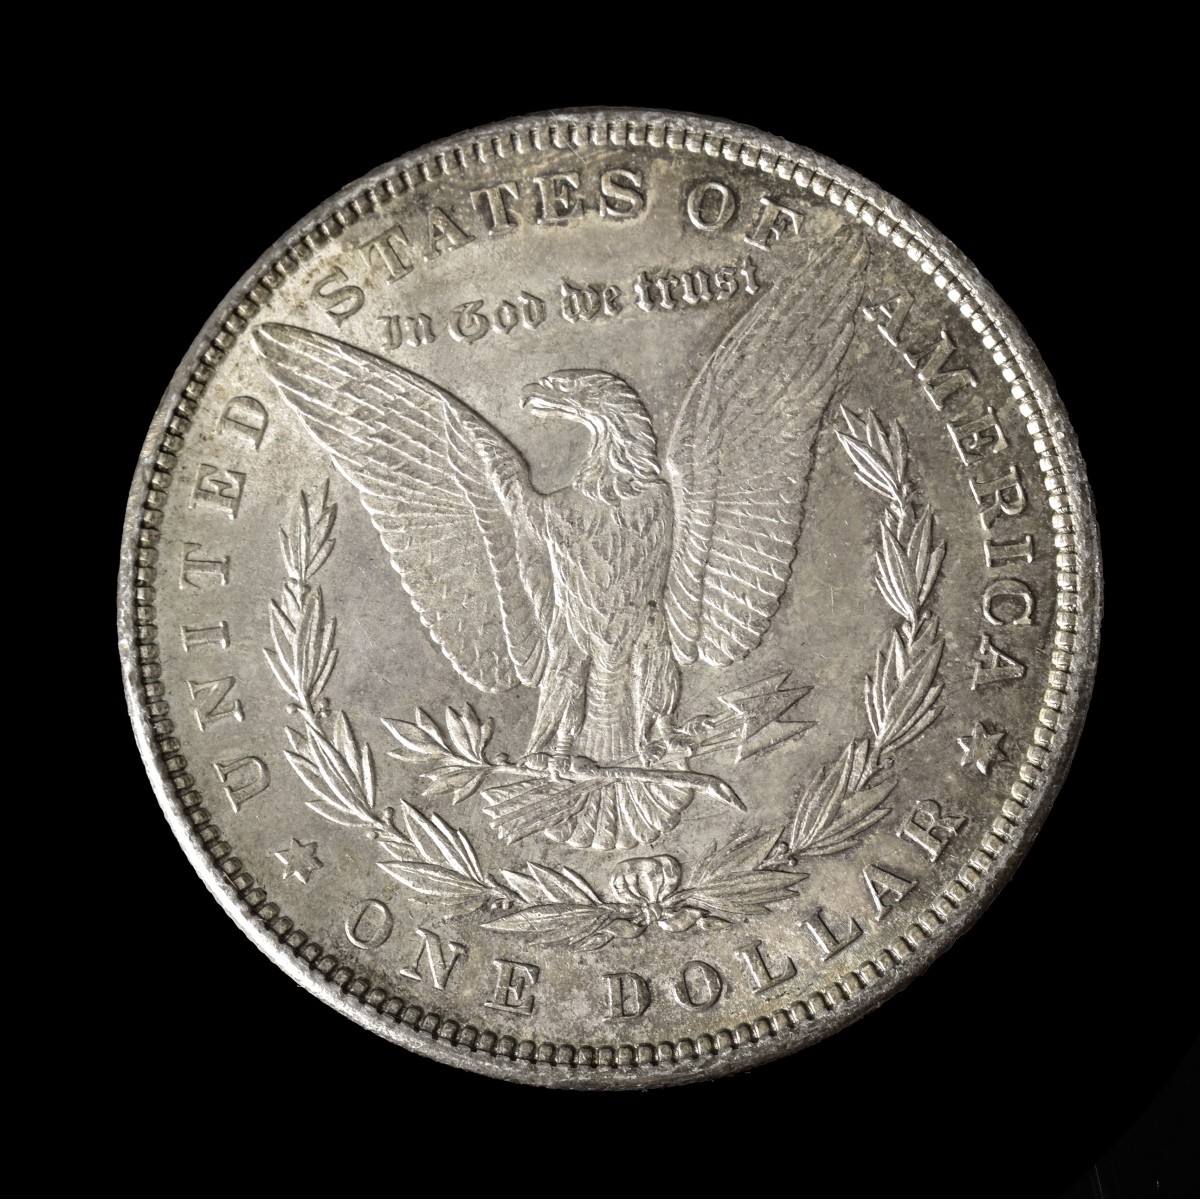 Six U.S. Silver Dollars